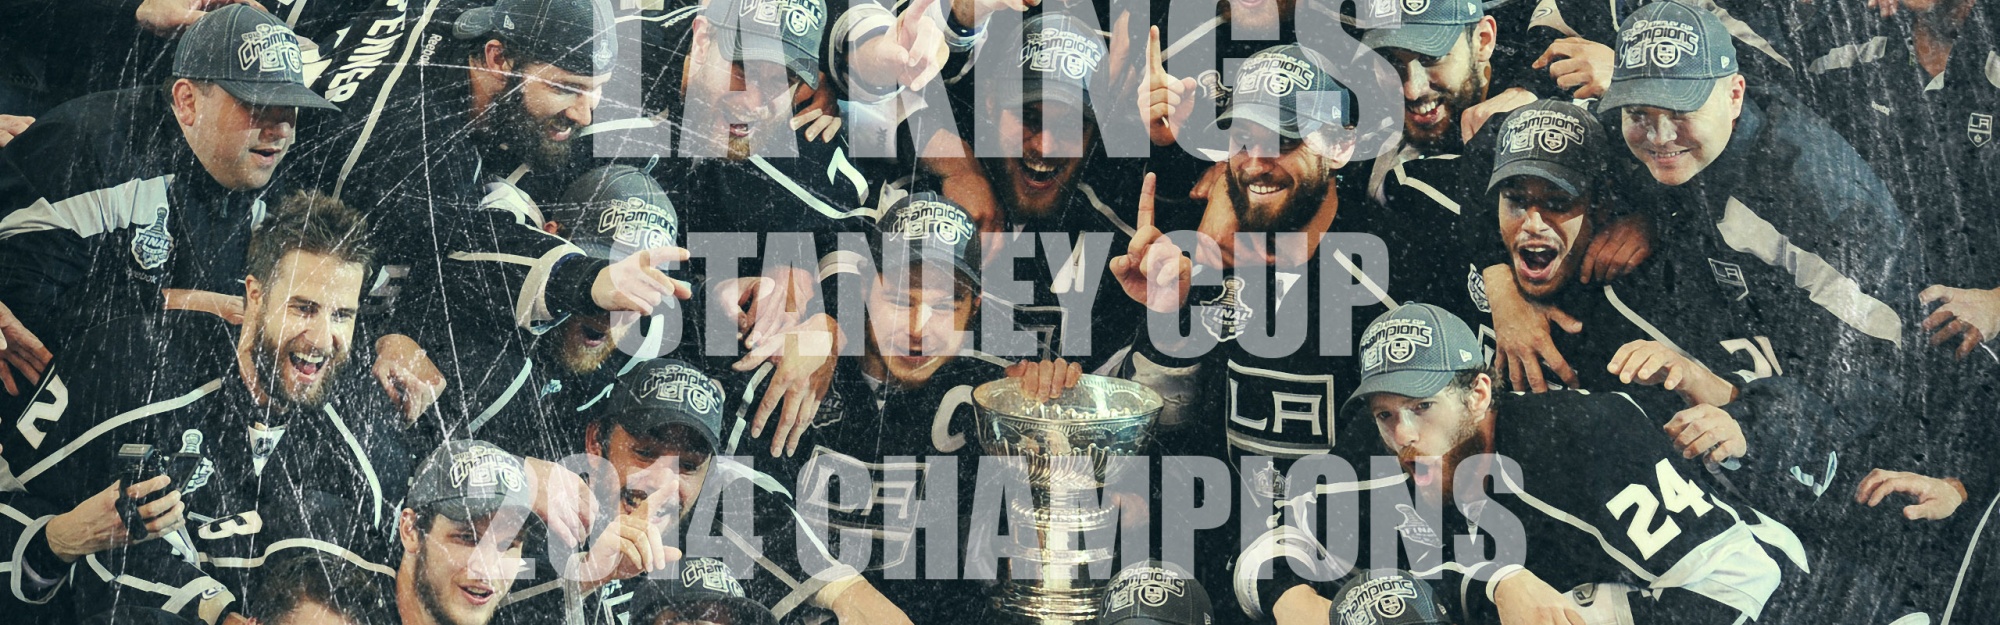 LA Kings 2014 Stanley Cup Winners